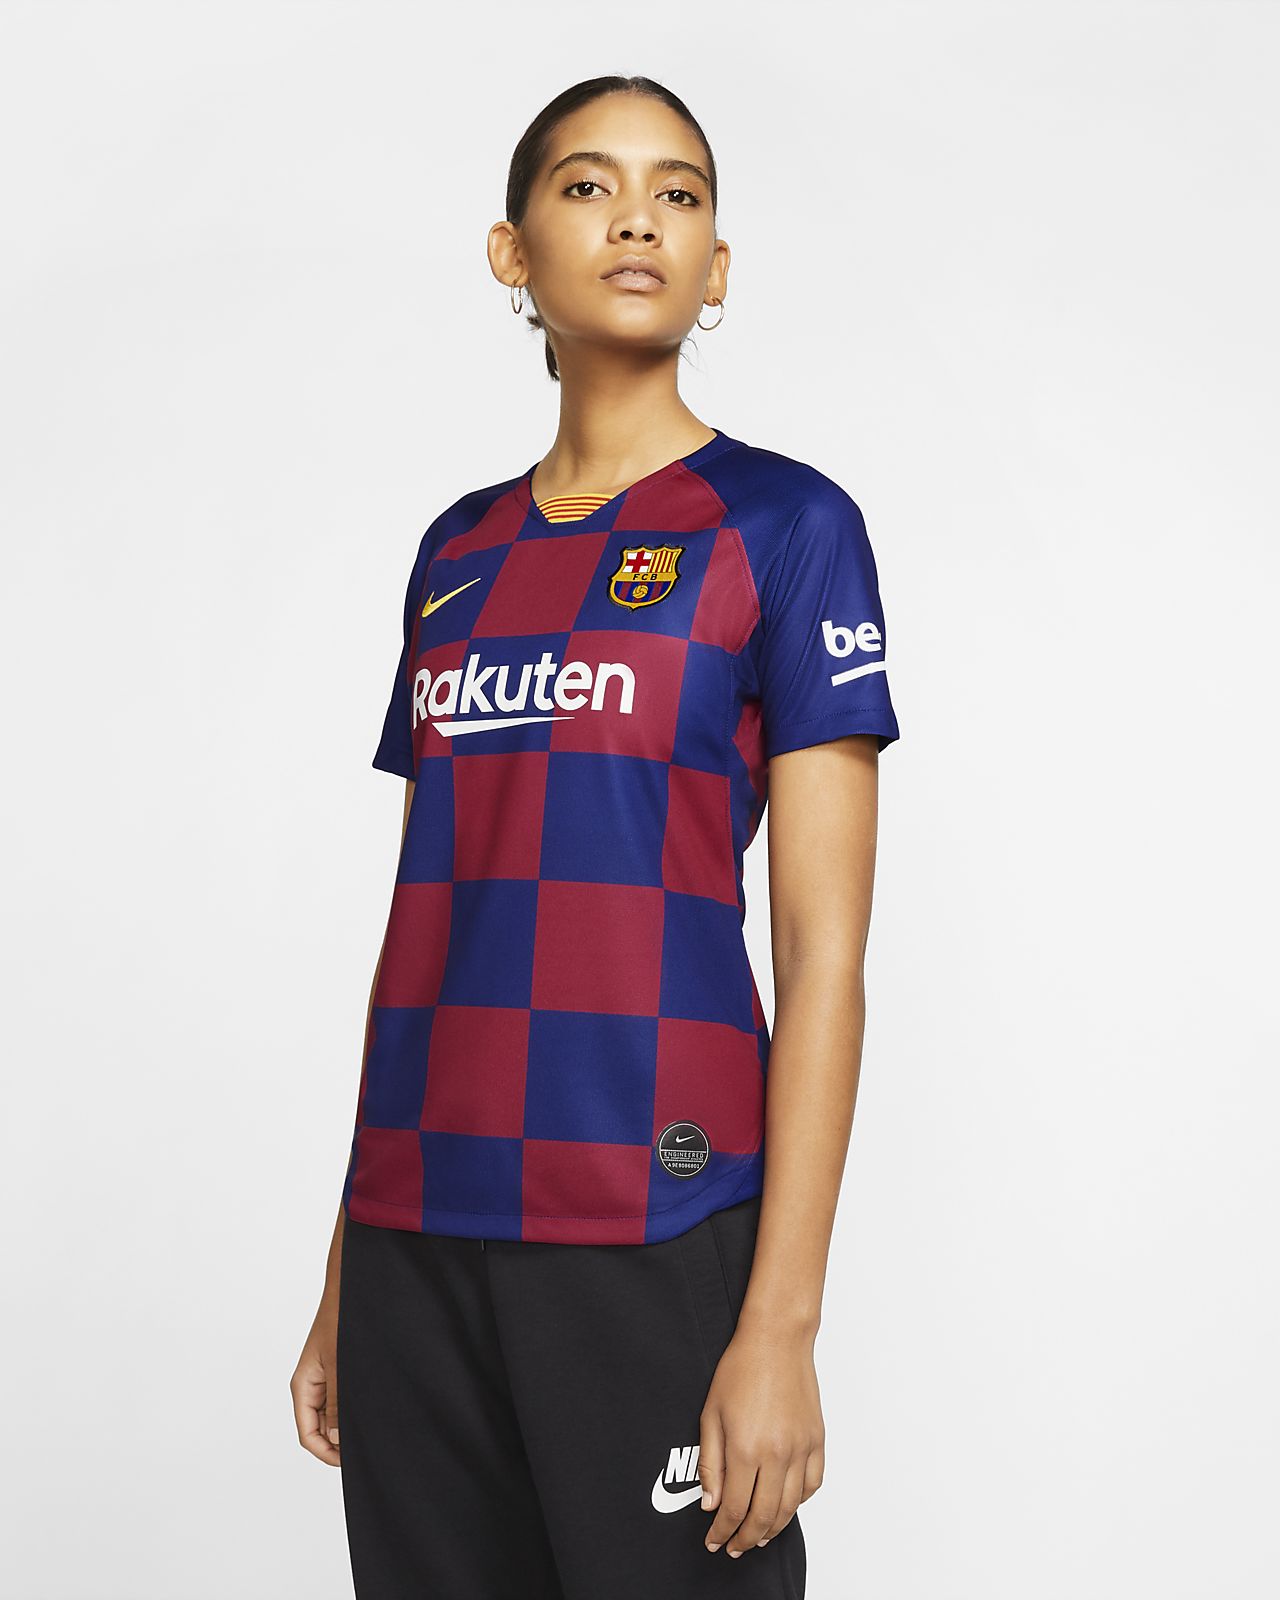 women's soccer jersey 2019